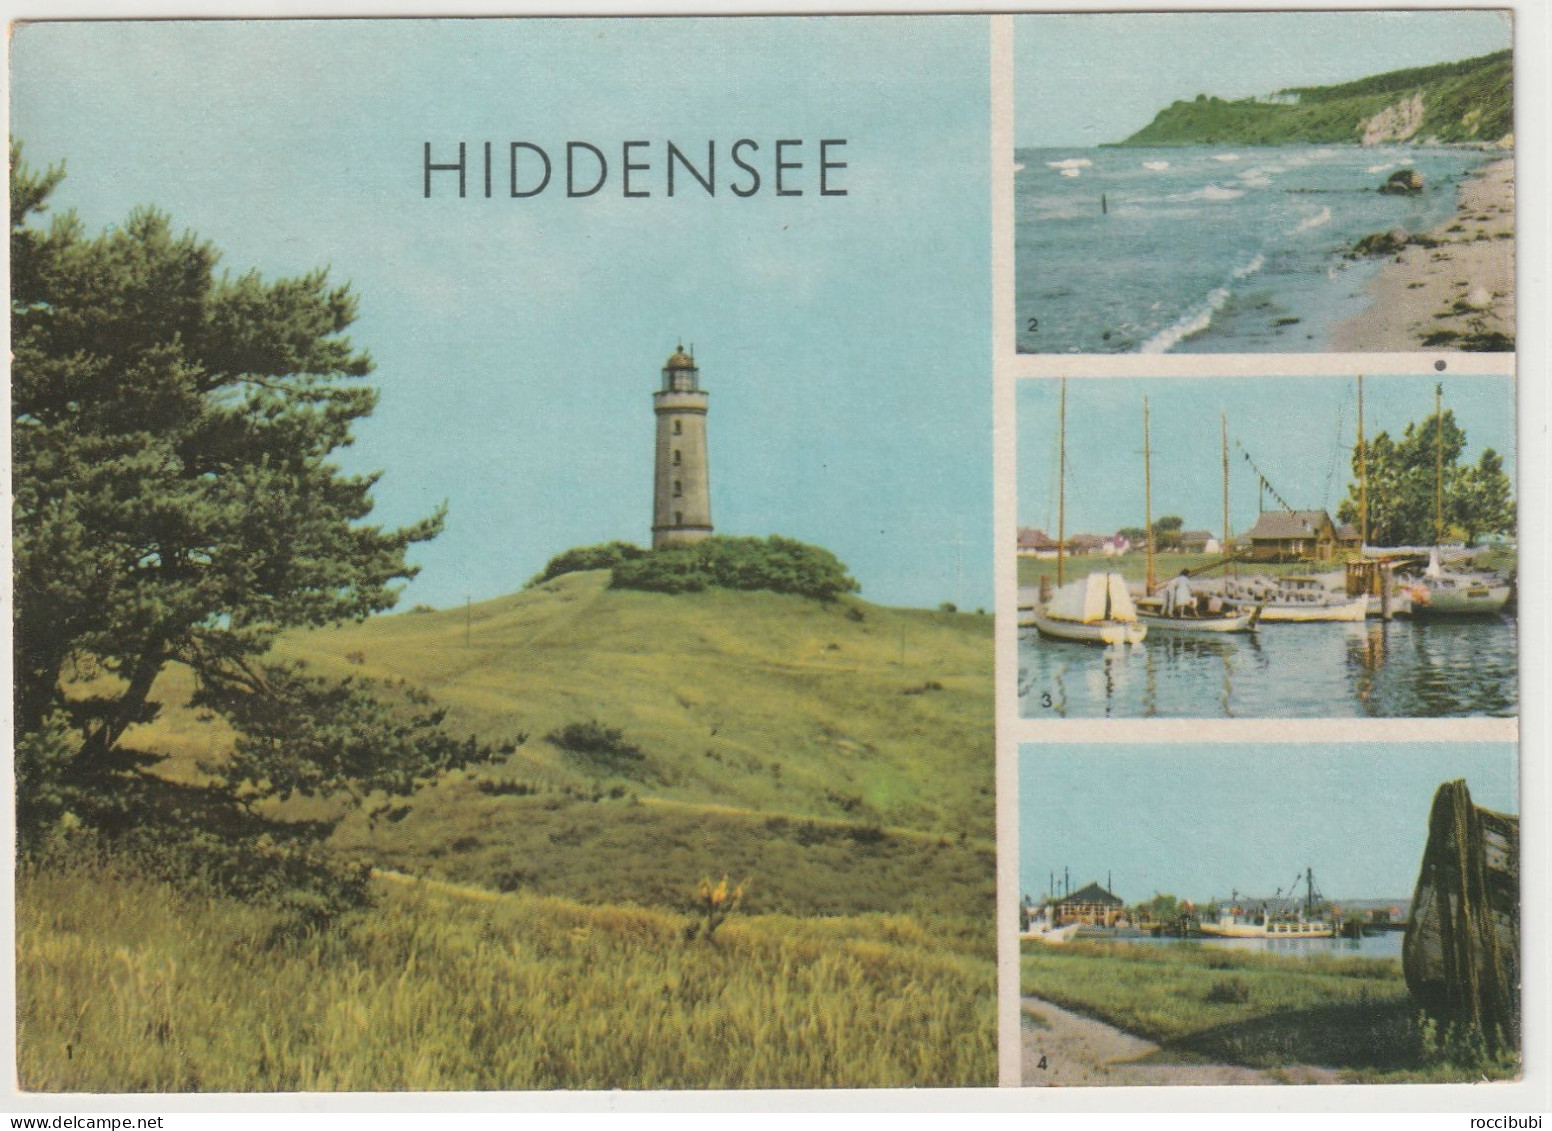 Hiddensee, Mecklenburg-Vorpommern - Hiddensee